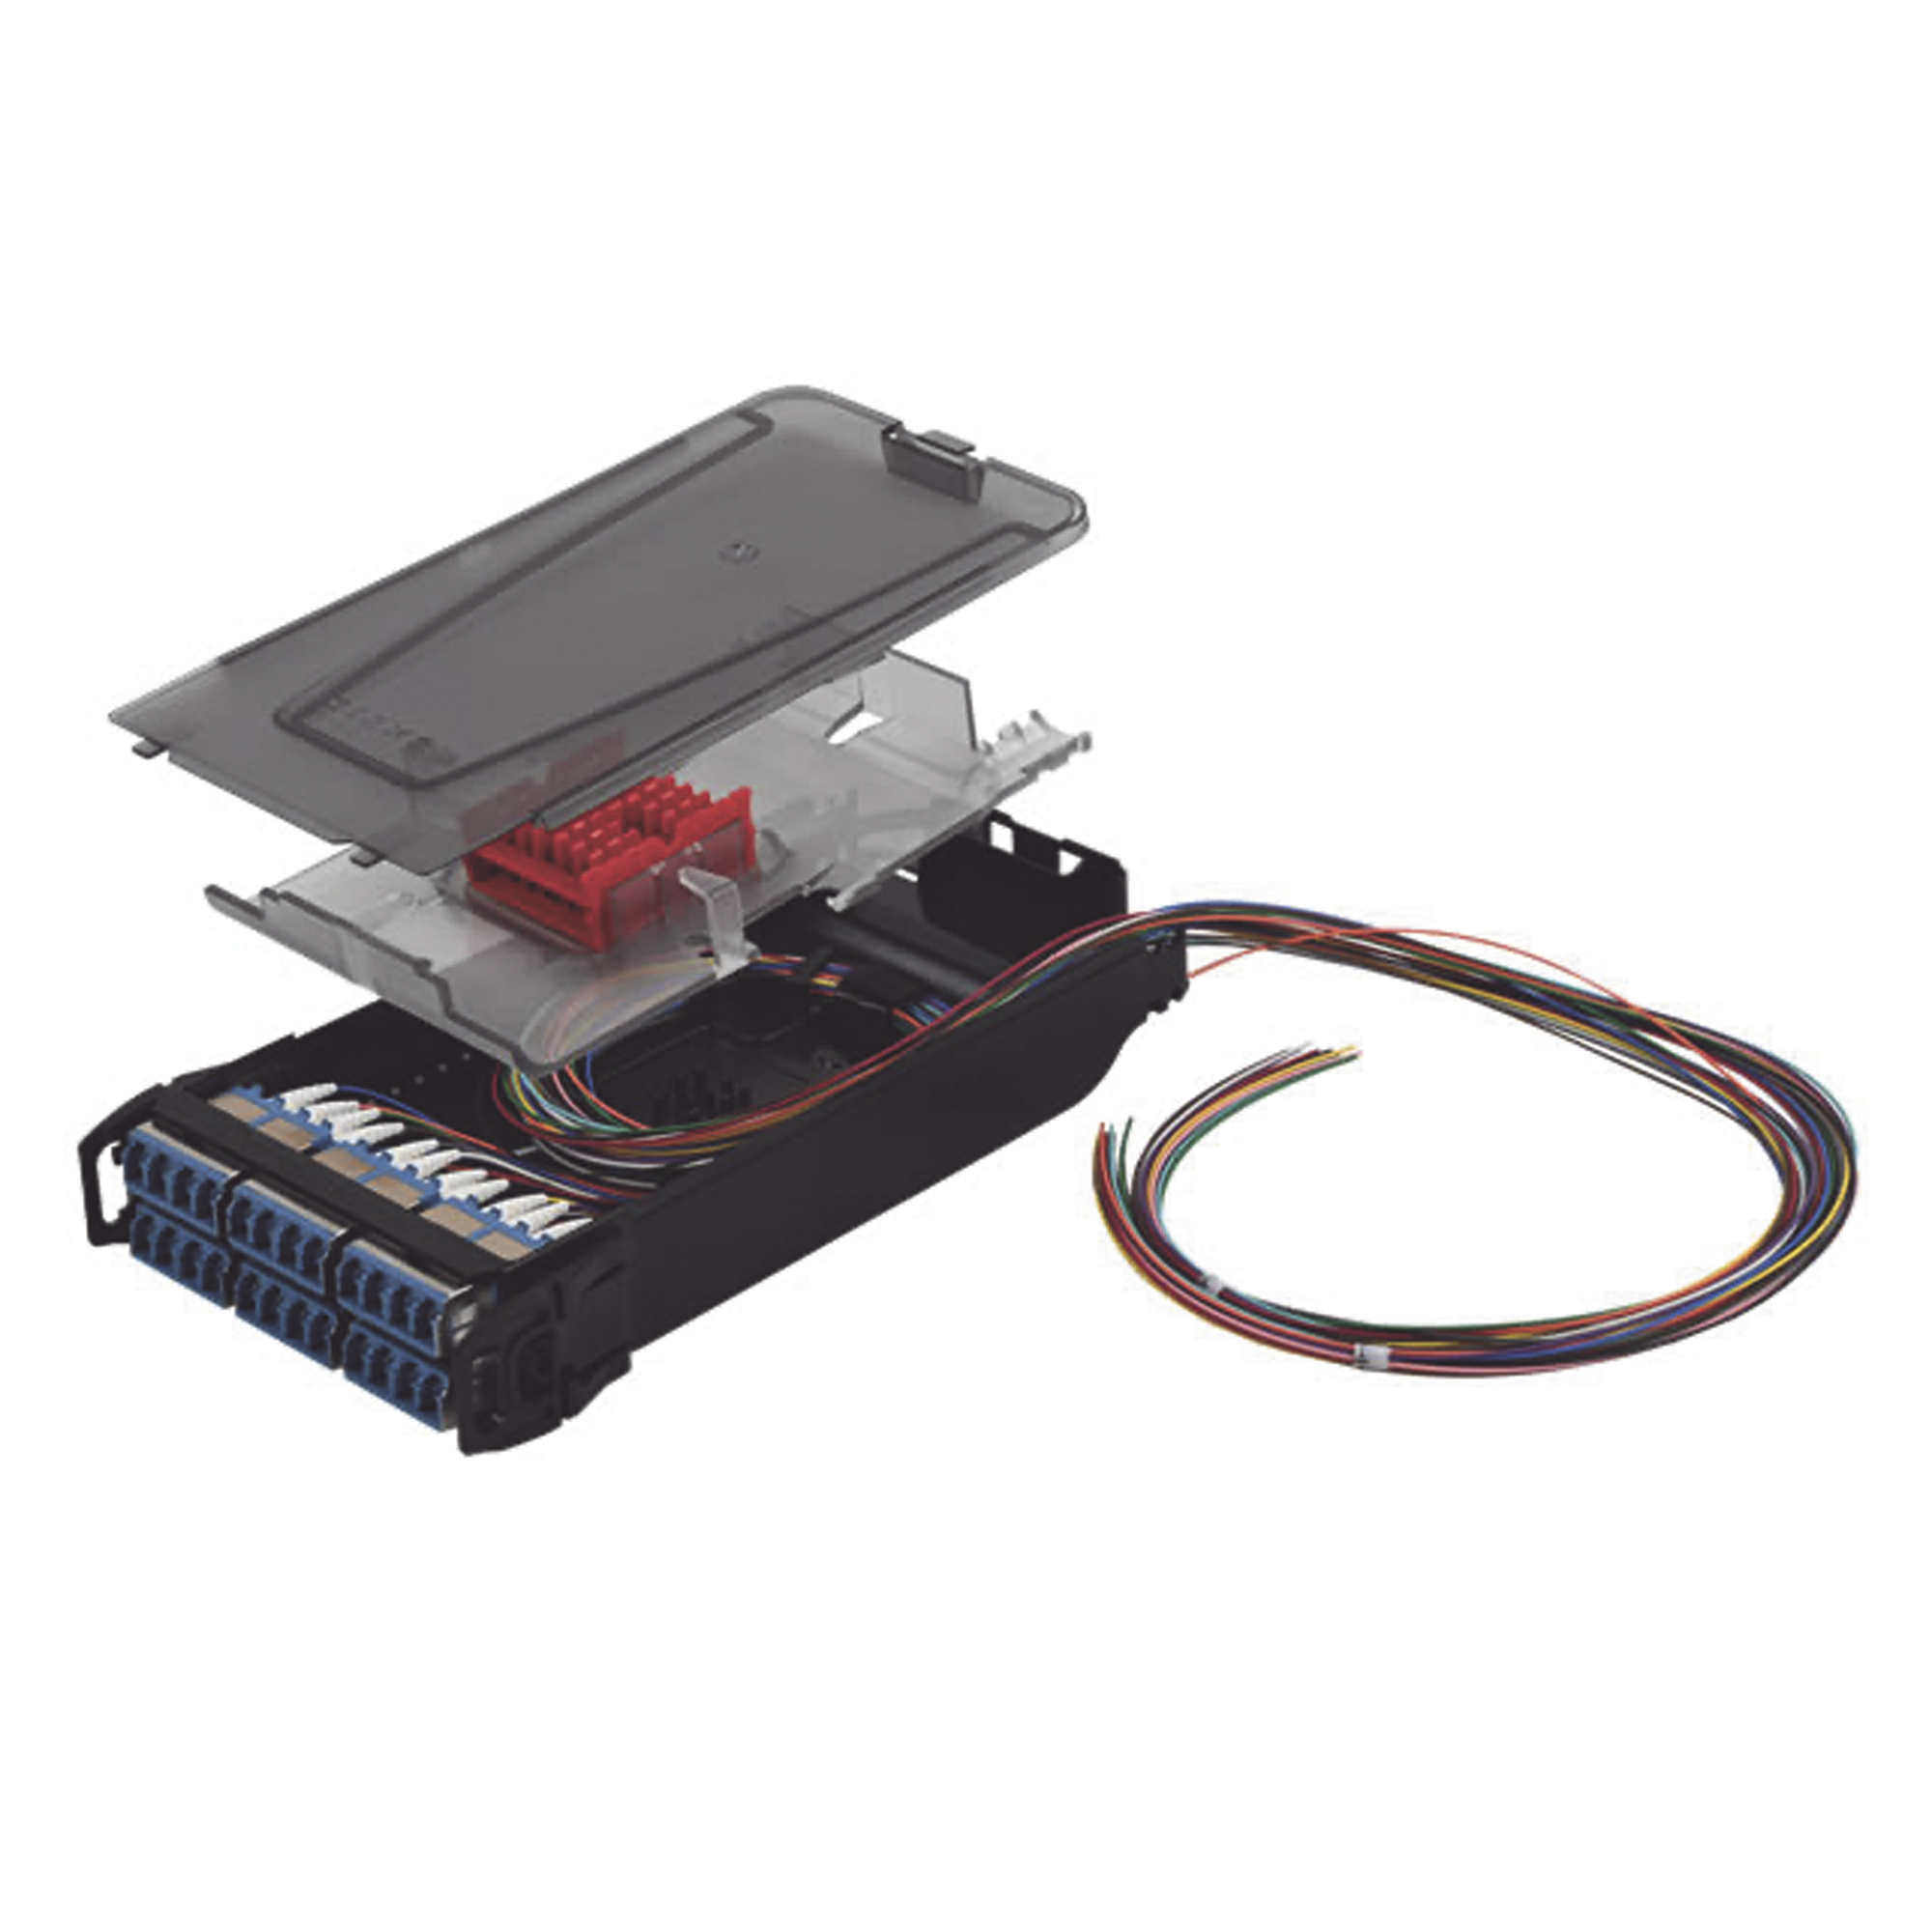 Cassette de empalme LightVerse, Acepta 24 fibras con conectores LC/UPC “Shuttered” Para fibra Monomodo OS2, Azul, incluye tapas cubre polvo abatibles integradas por cada conector.